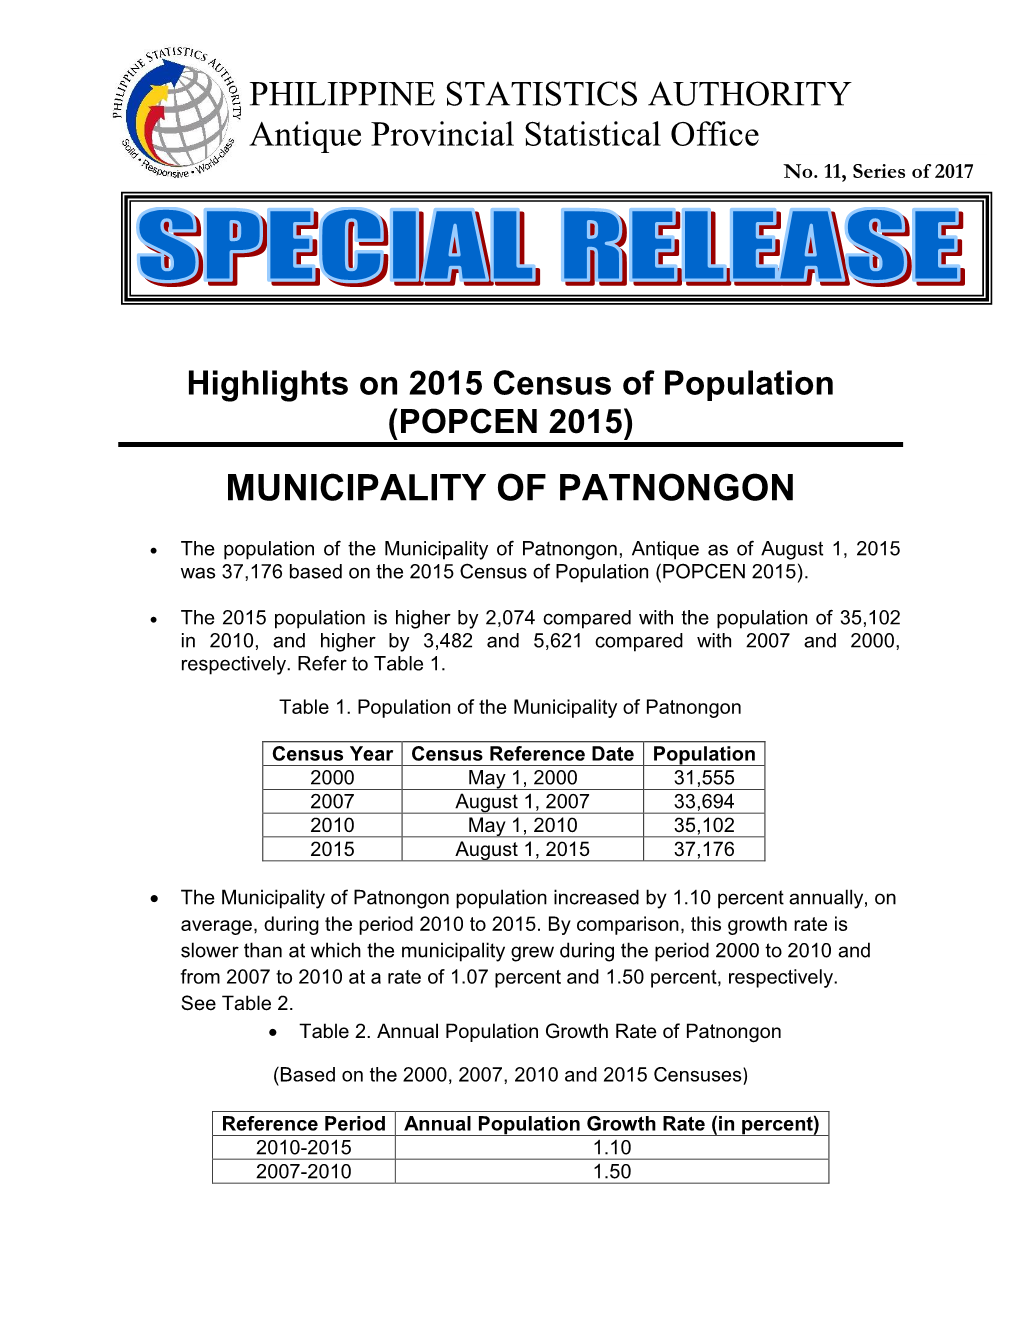 Municipality of Patnongon